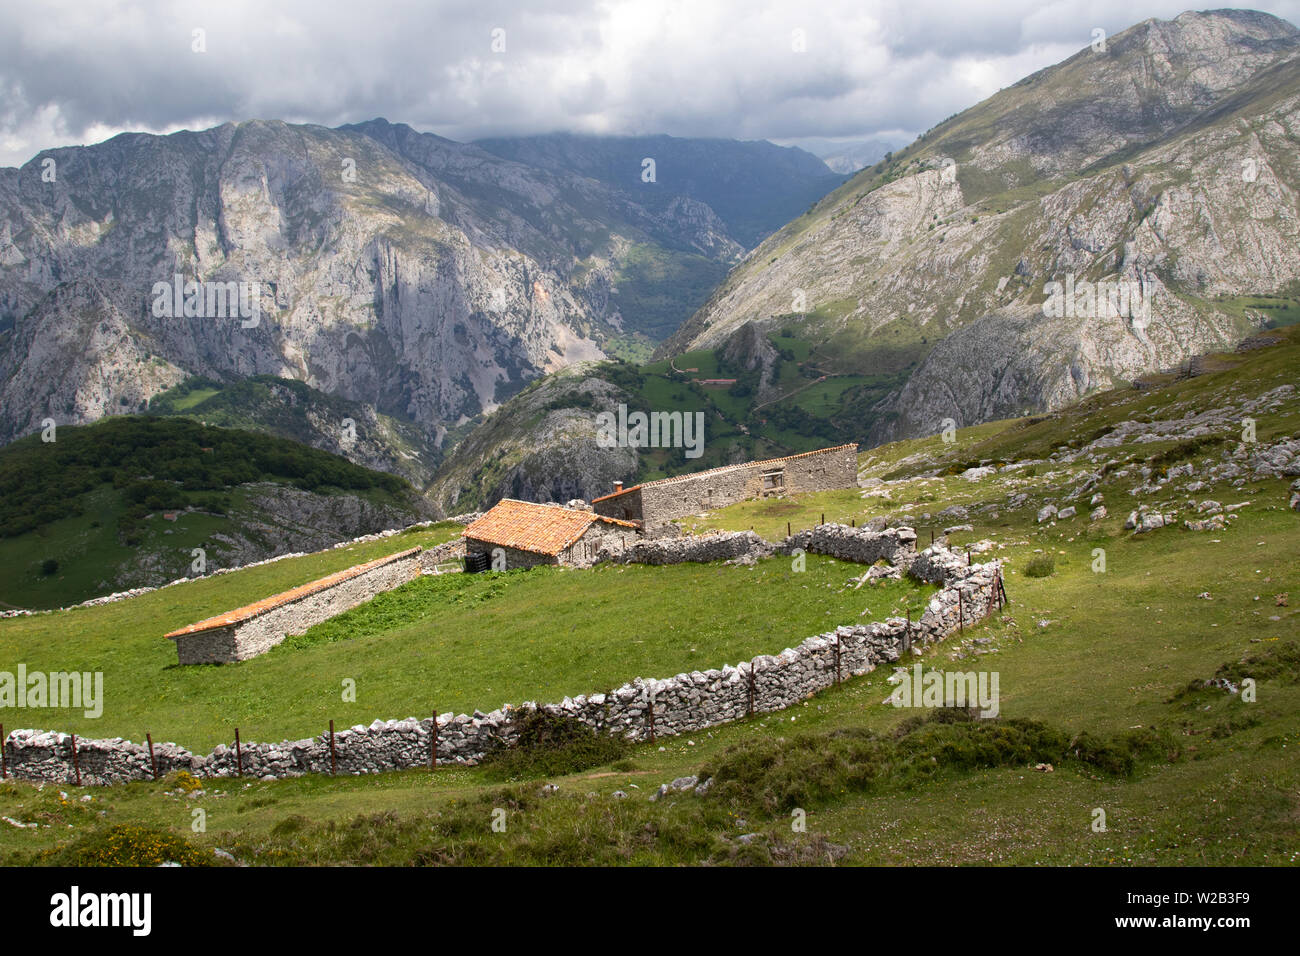 Bâtiments agricoles alpins et enceinte de mur de pierre sèche au-dessus du village de Bejes, parc national Picos de Europa, Espagne Banque D'Images